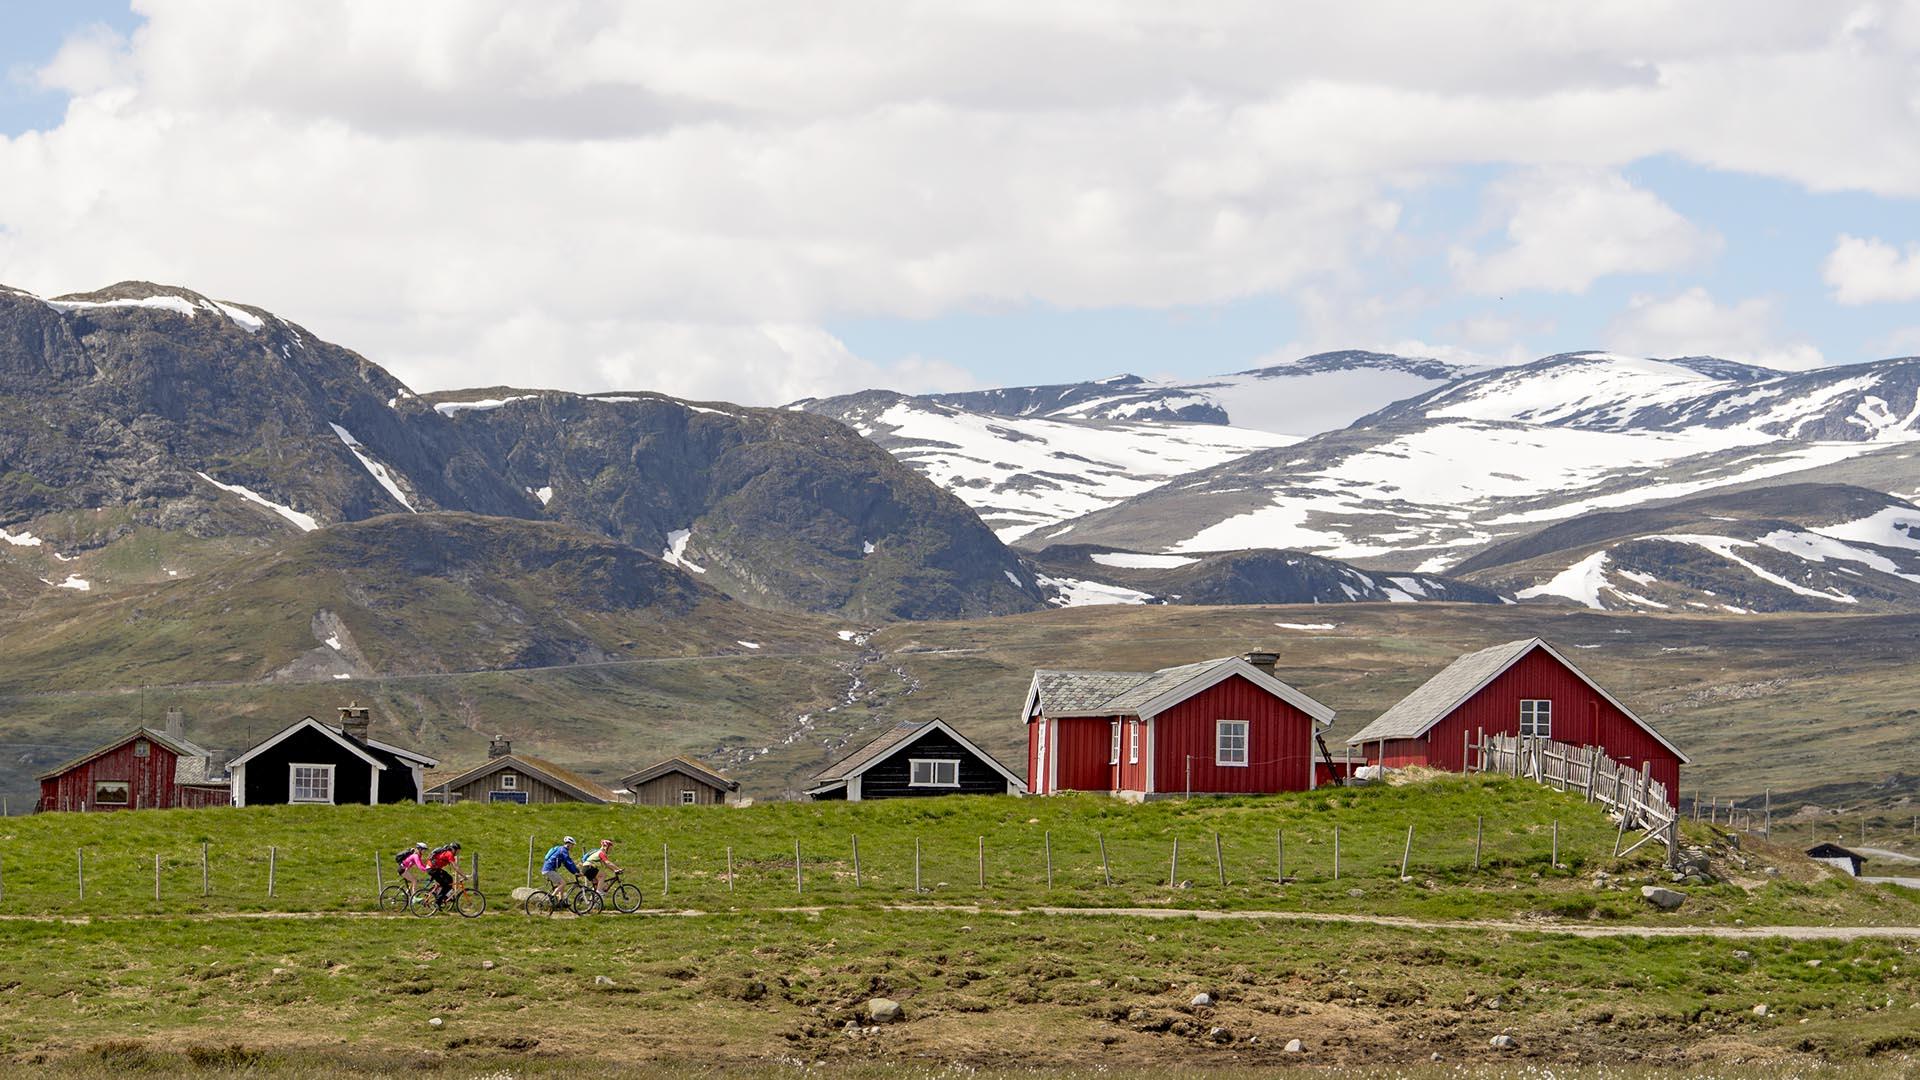 Syklister på en stølsvei som går tvers over bildet, med grønne beiter og en klynge med røde stølshus bakenfor. I bakgrunnen reiser et mektig fjellandskap seg, der det enda ligger snø.